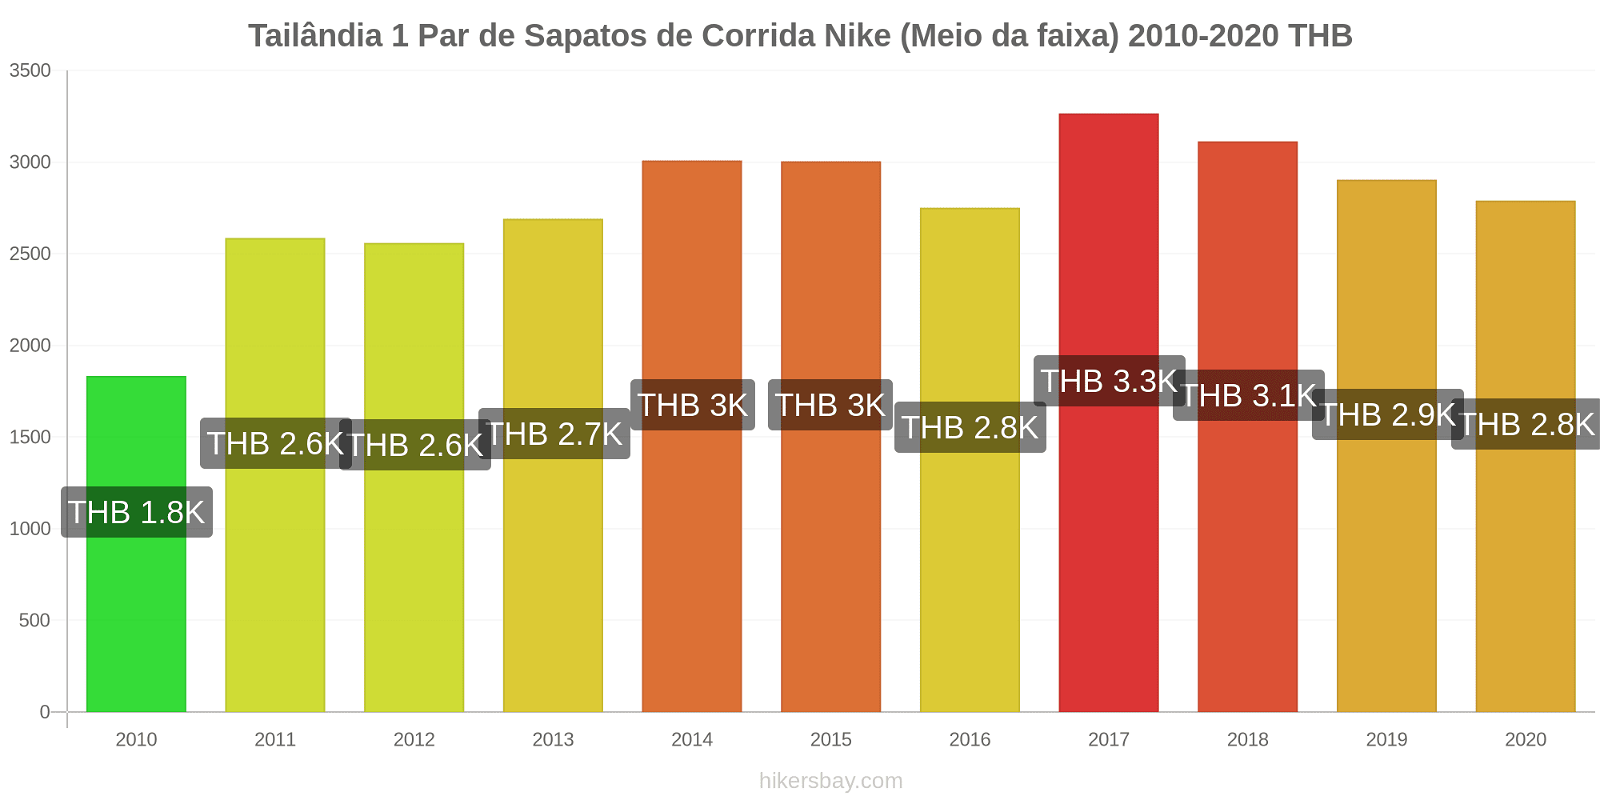 Tailândia variação de preço 1 par de tênis Nike (mid-range) hikersbay.com